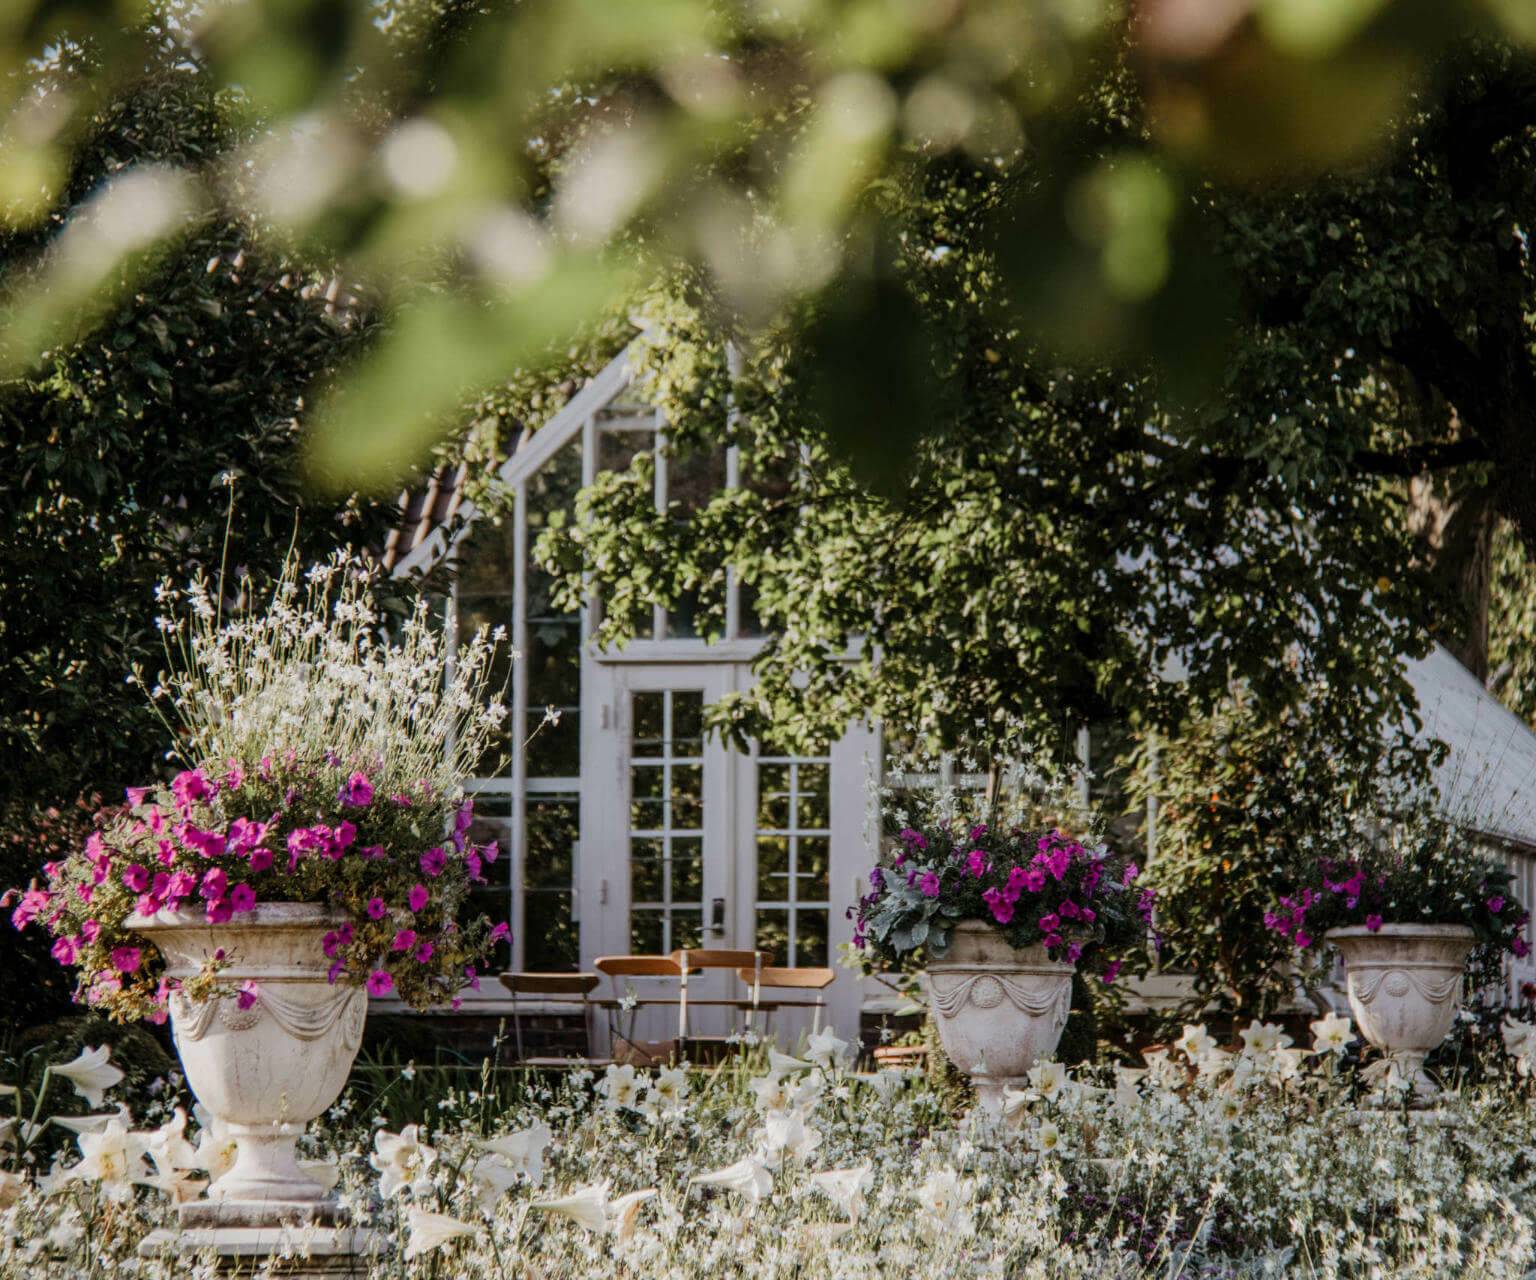 Ein weißes, elegantes Gartenhaus liegt versteckt hinter grünen Bäumen in einem Schlossgarten, davor stehen große Kübel mit rosaroten Blumen.